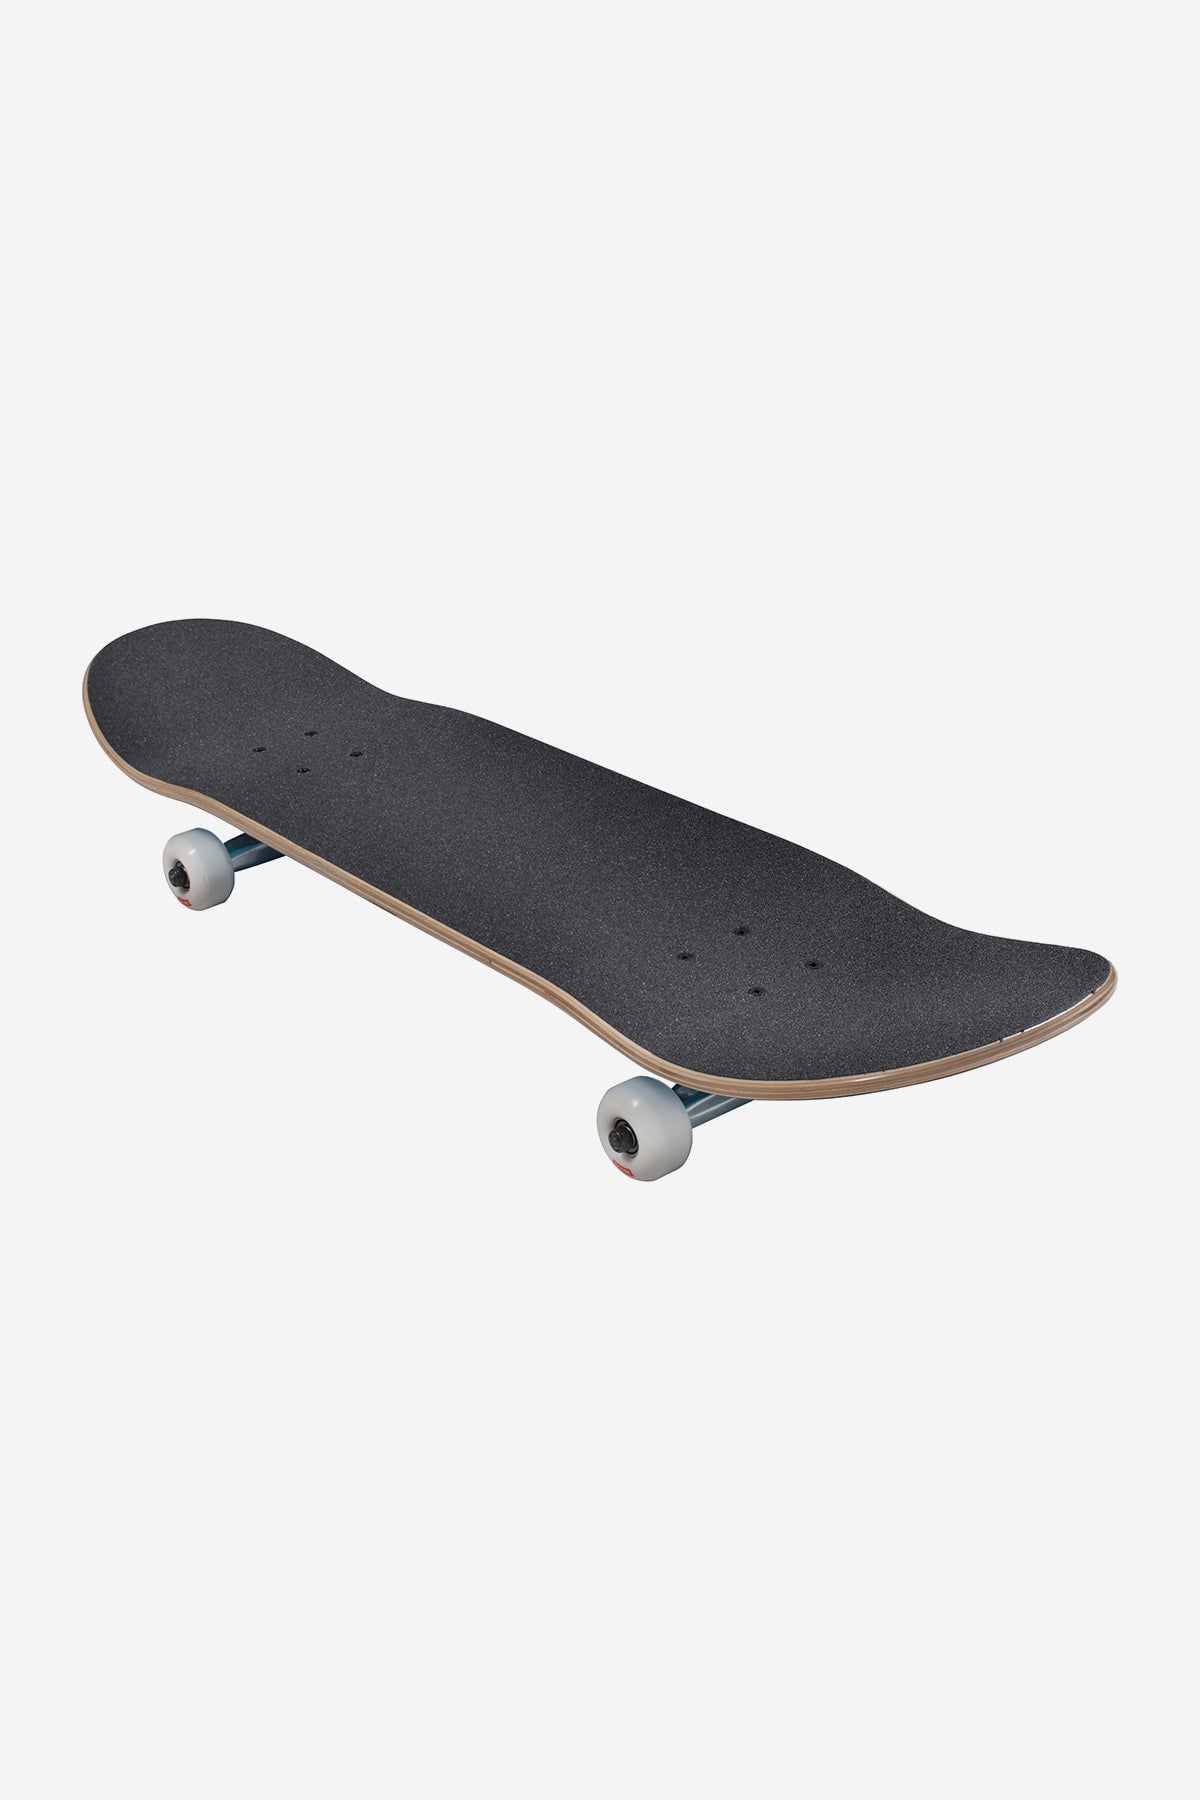 Globe - Goodstock - Navy - 7.875" Completo Skateboard